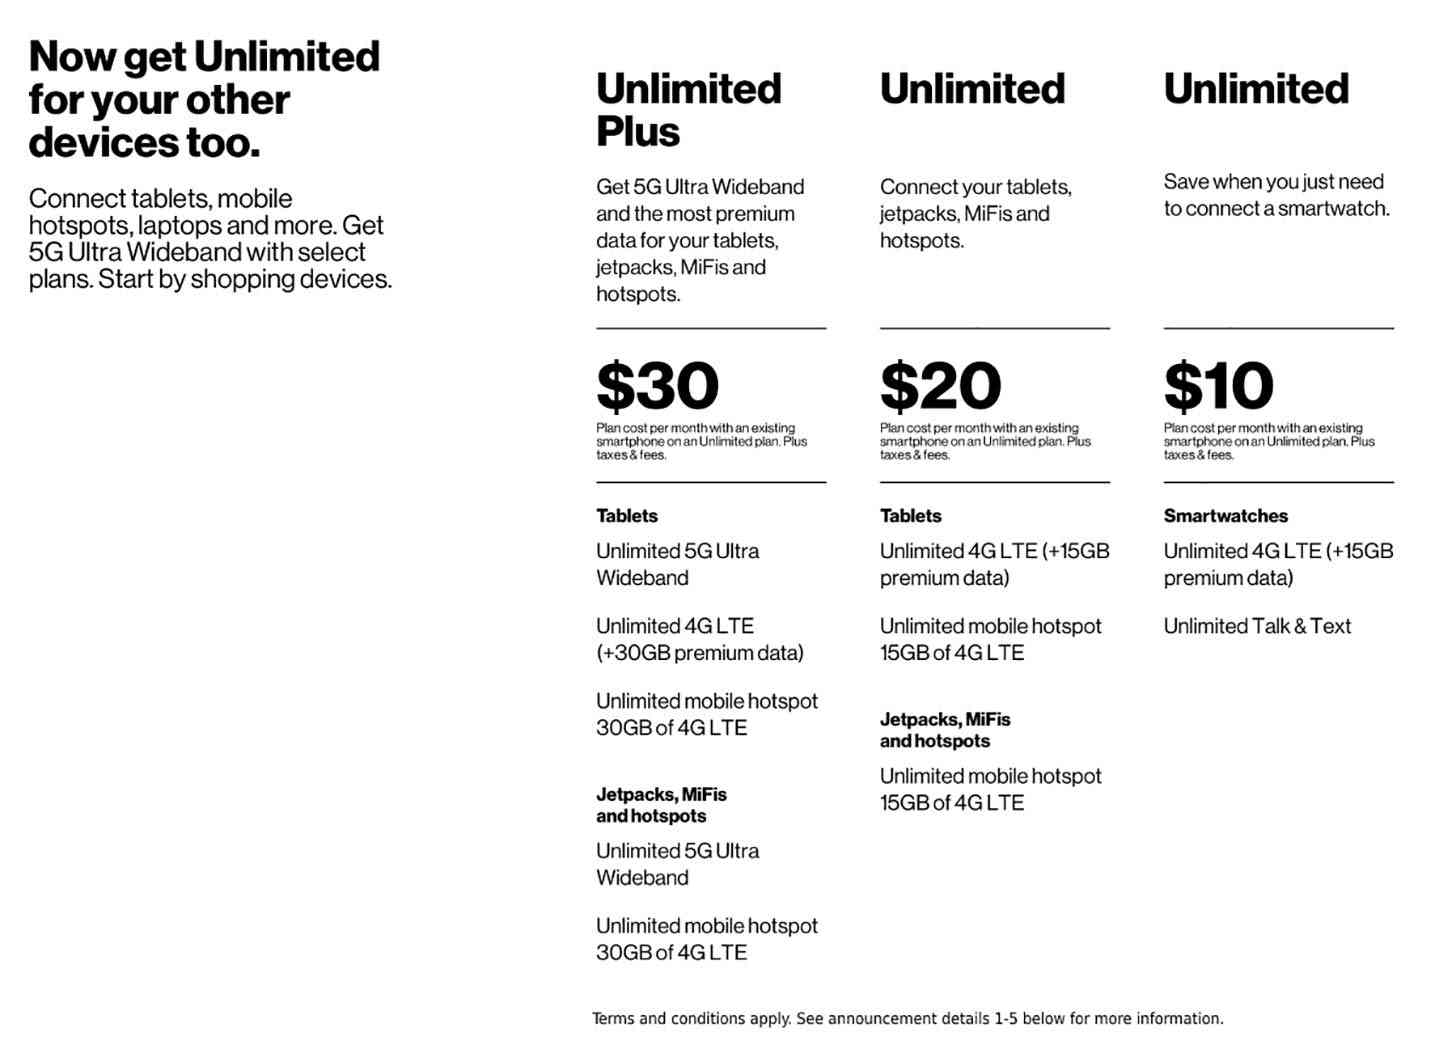 Verizon unlimited plans tablets, hotspots, smartwatches